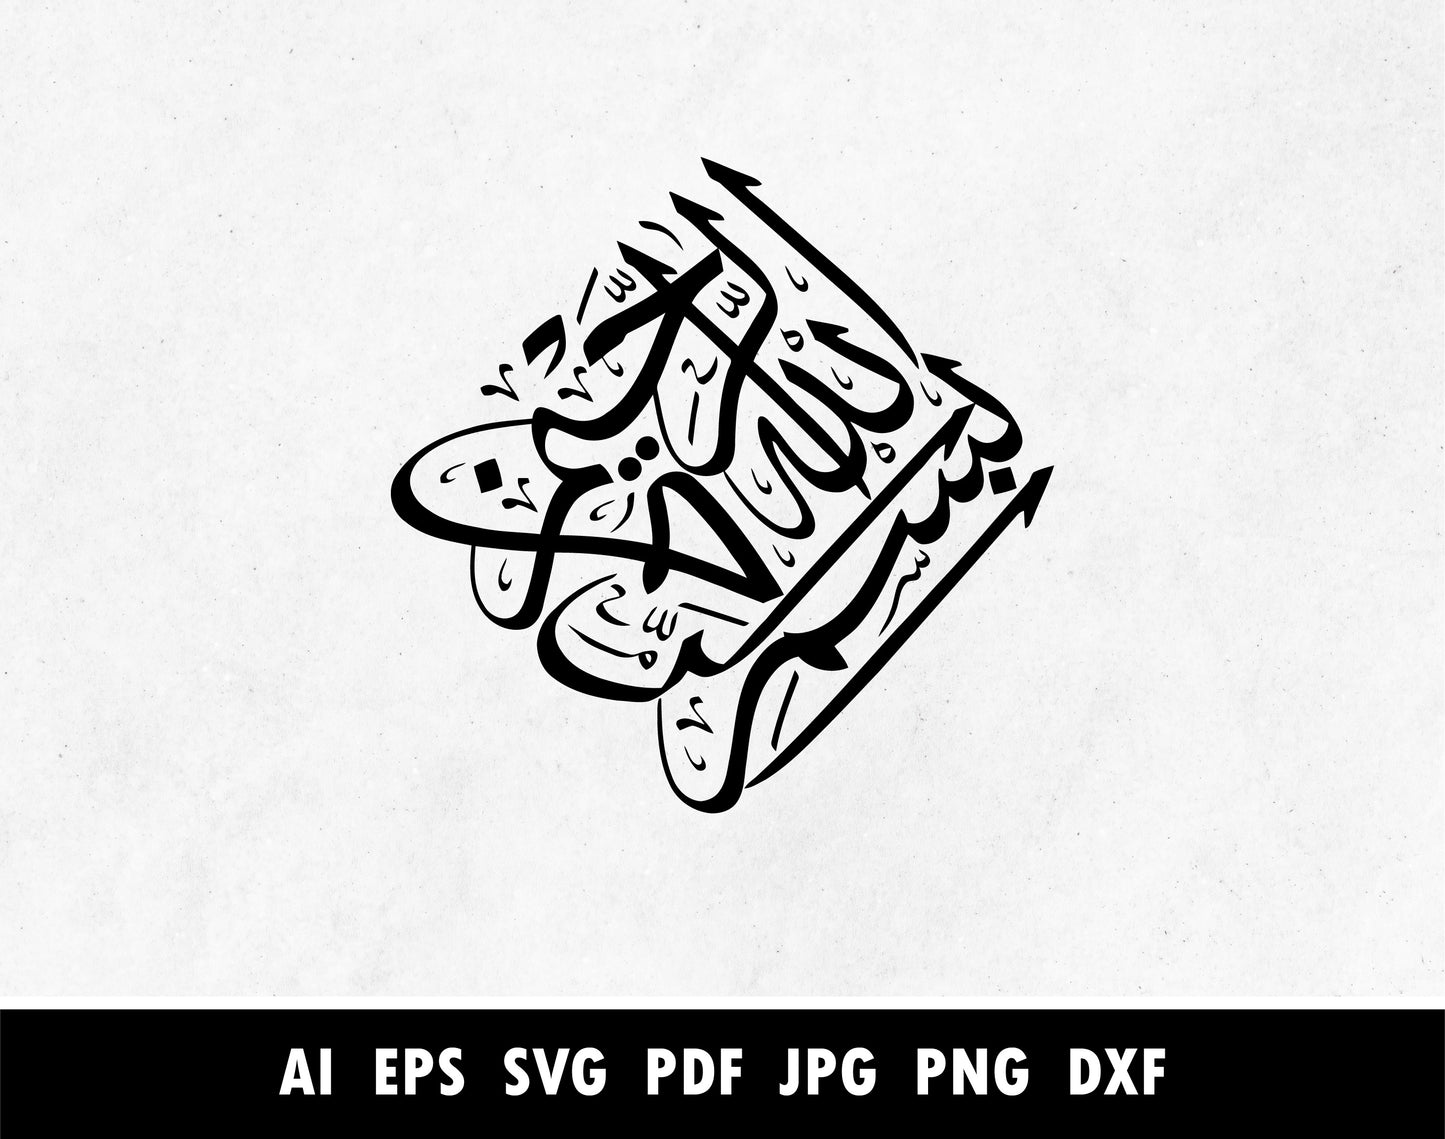 بسم الله الرحمن الرحيم, Bismillah diamond shape Arabic Calligraphy vector for Painting Stencils, Stickers projects